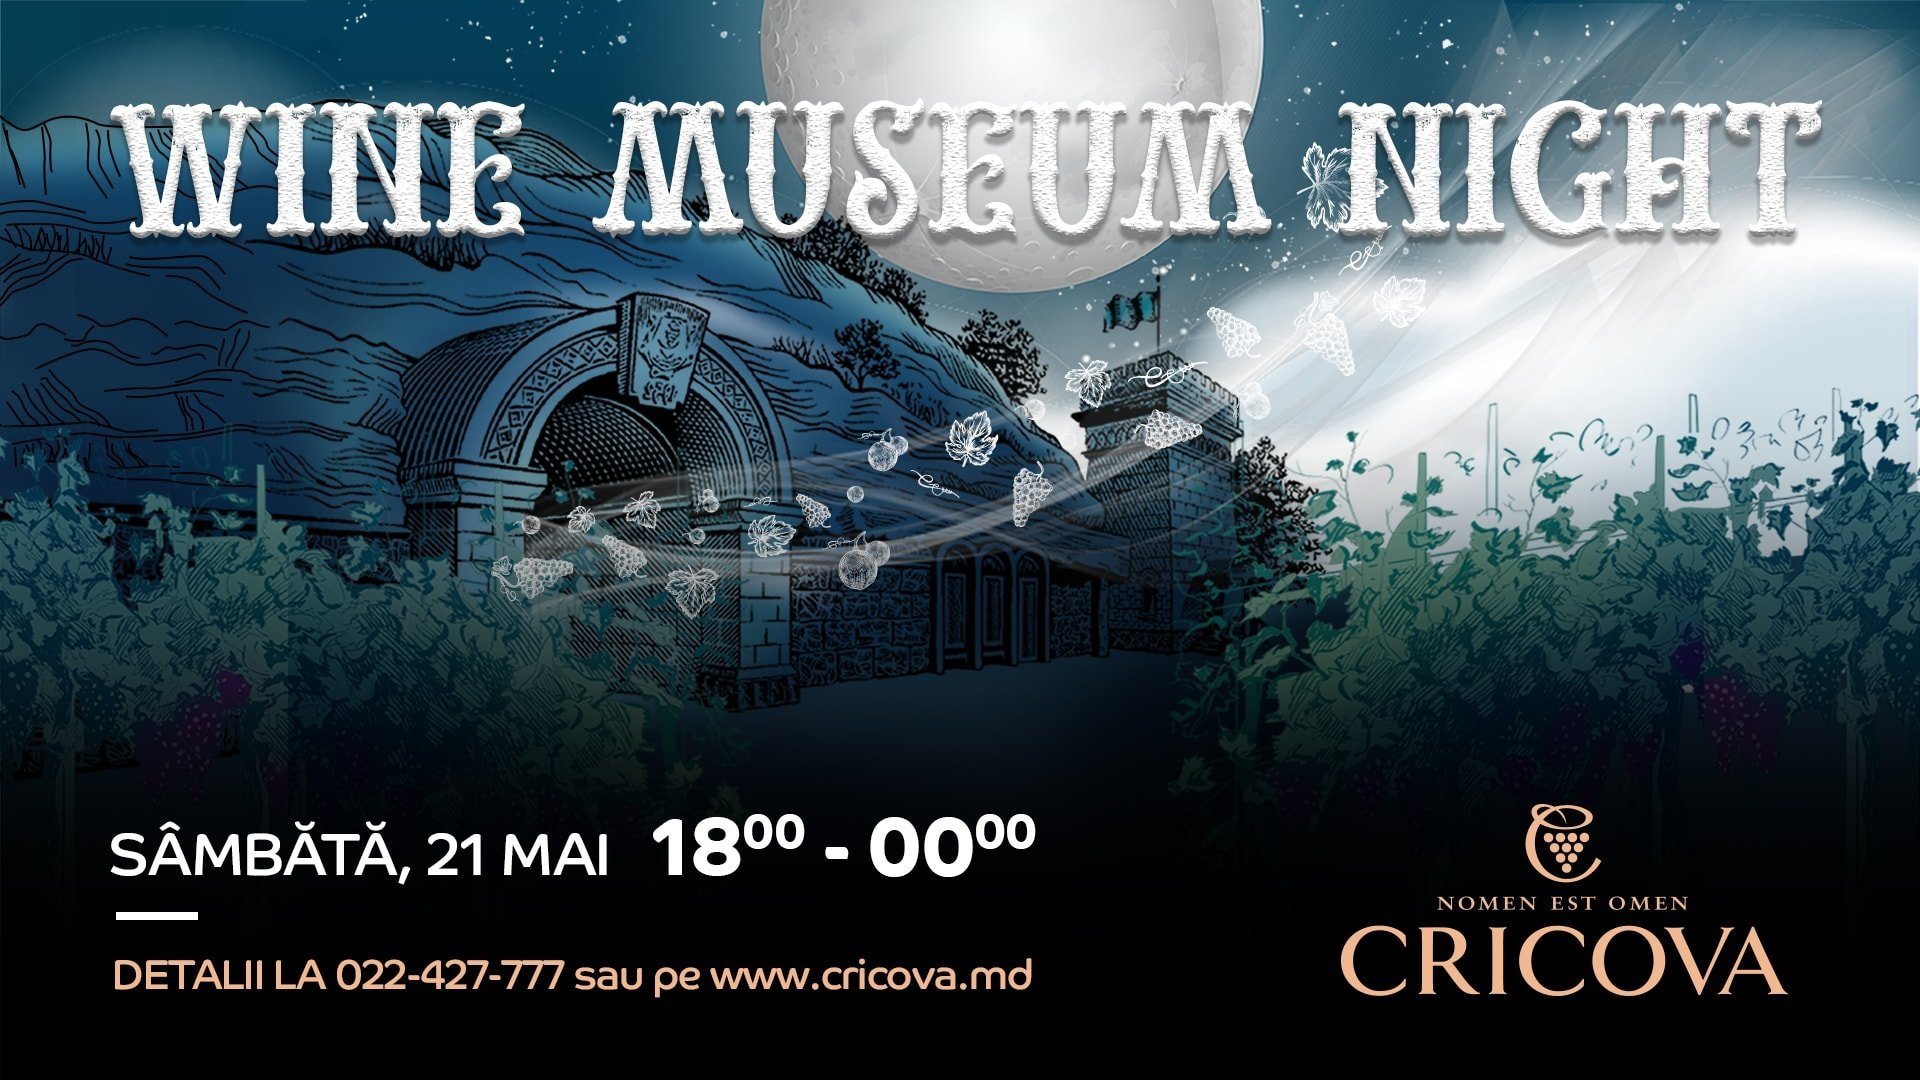 WINE MUSEUM NIGHT by Cricova Winery